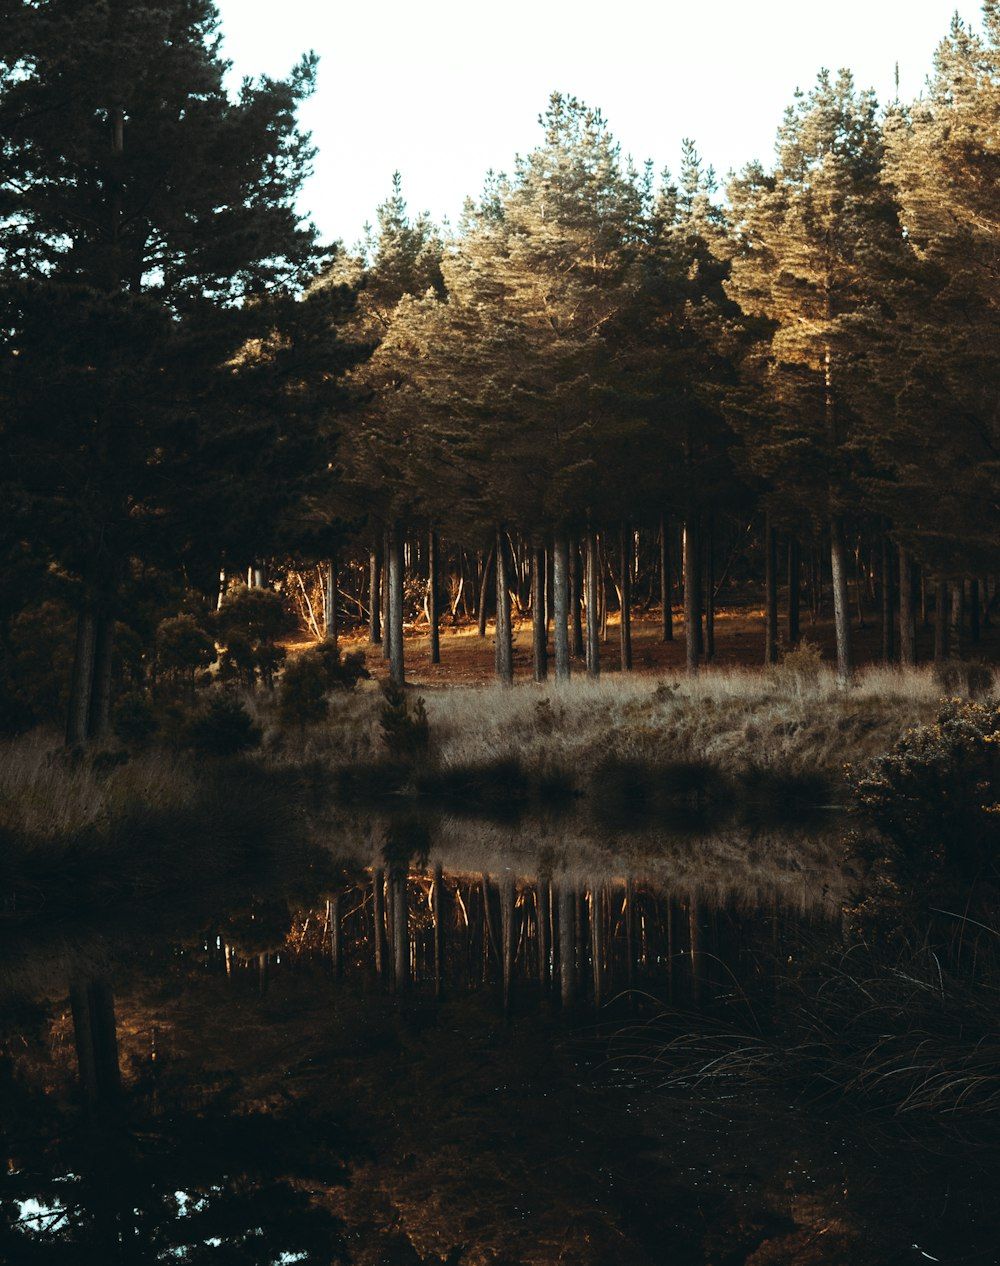  Wald See Hintergrundbild 1000x1266. Foto zum Thema Ein See, umgeben von hohen Bäumen und Gras